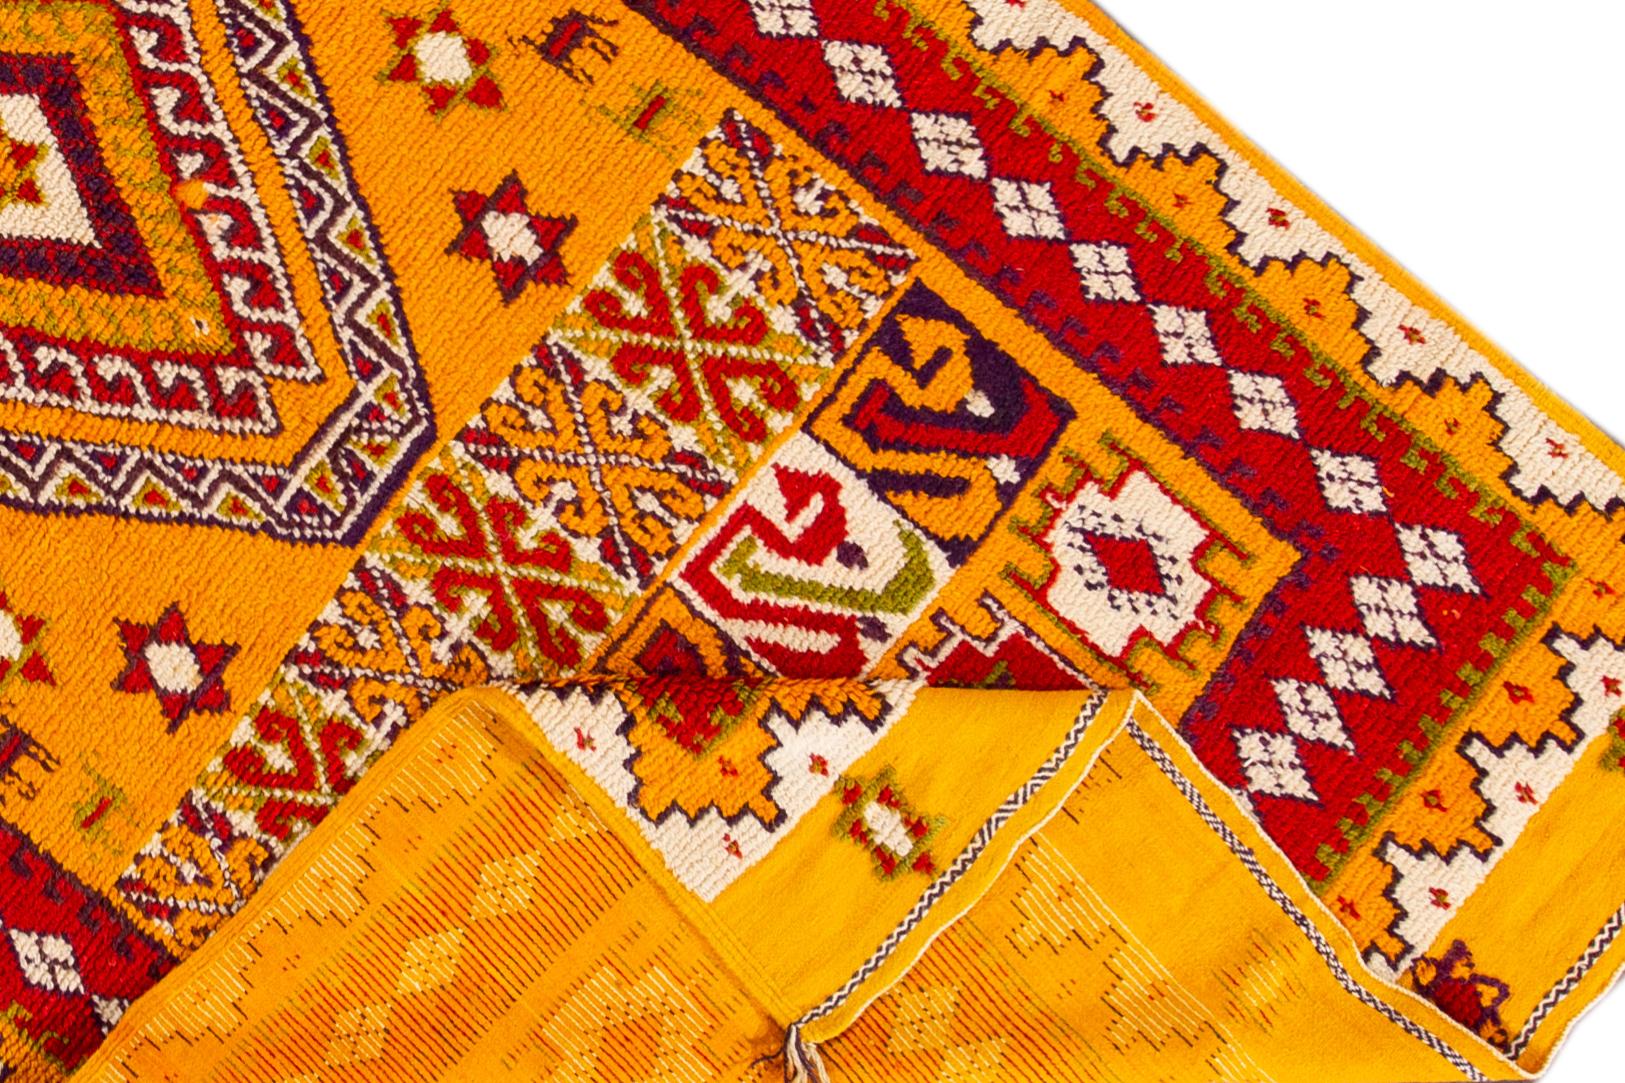 Schöner marokkanischer Vintage-Stammesteppich aus handgeknüpfter Wolle mit einem orangefarbenen Feld, roten und elfenbeinfarbenen Akzenten in einem klassischen Medaillon-Stammesmuster.

Dieser Teppich misst 4' 10